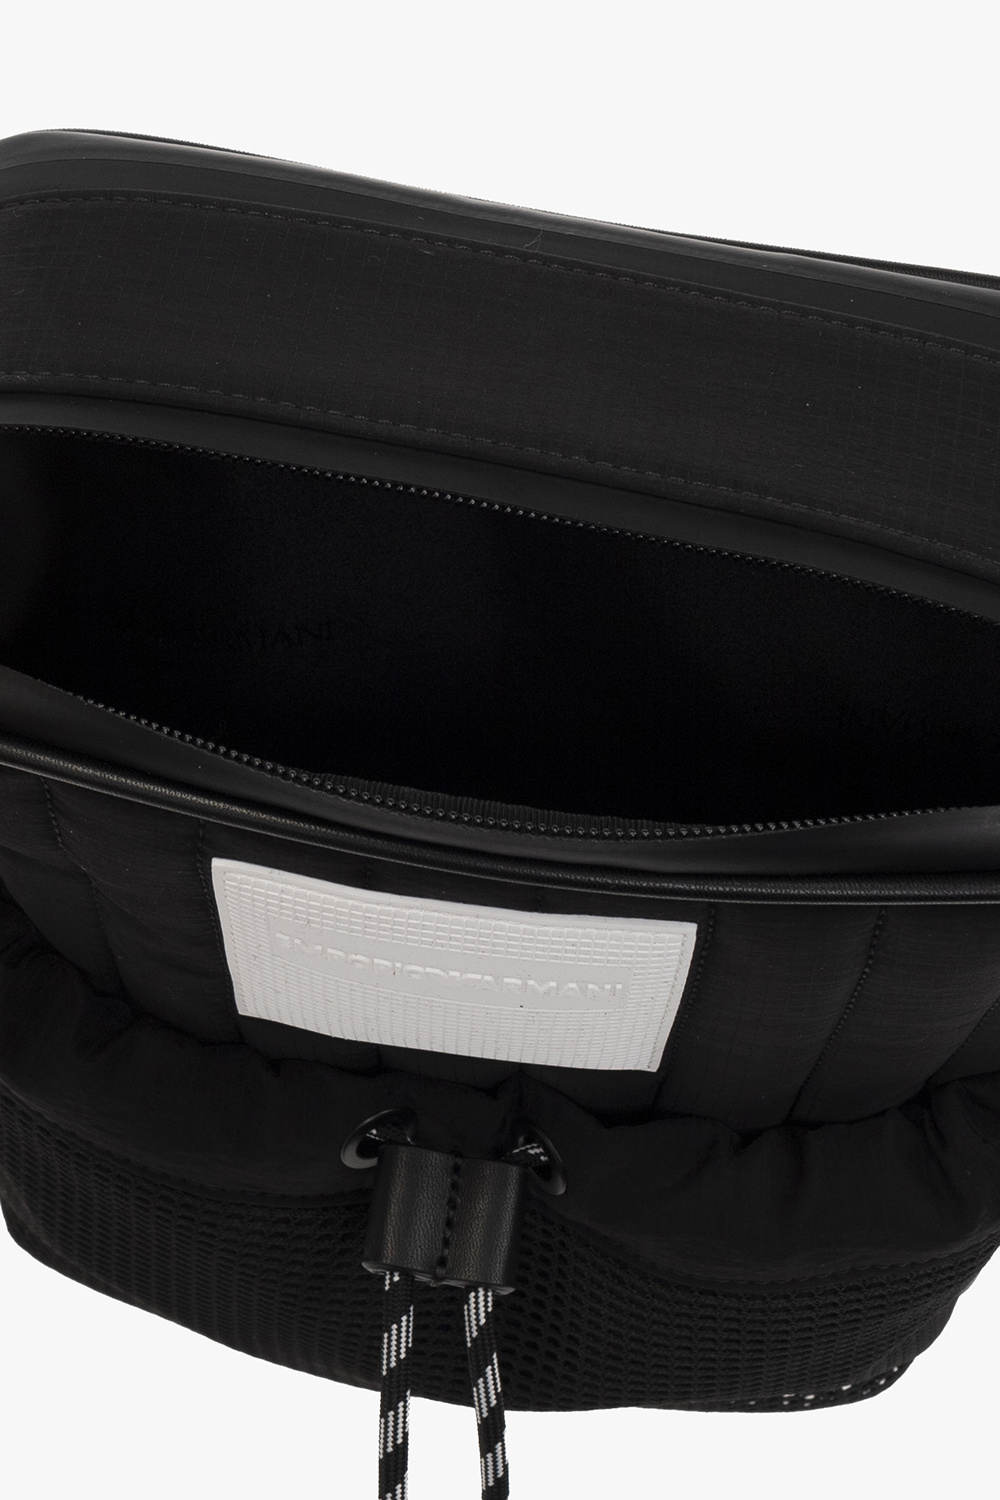 Emporio armani ea7 Quilted shoulder bag